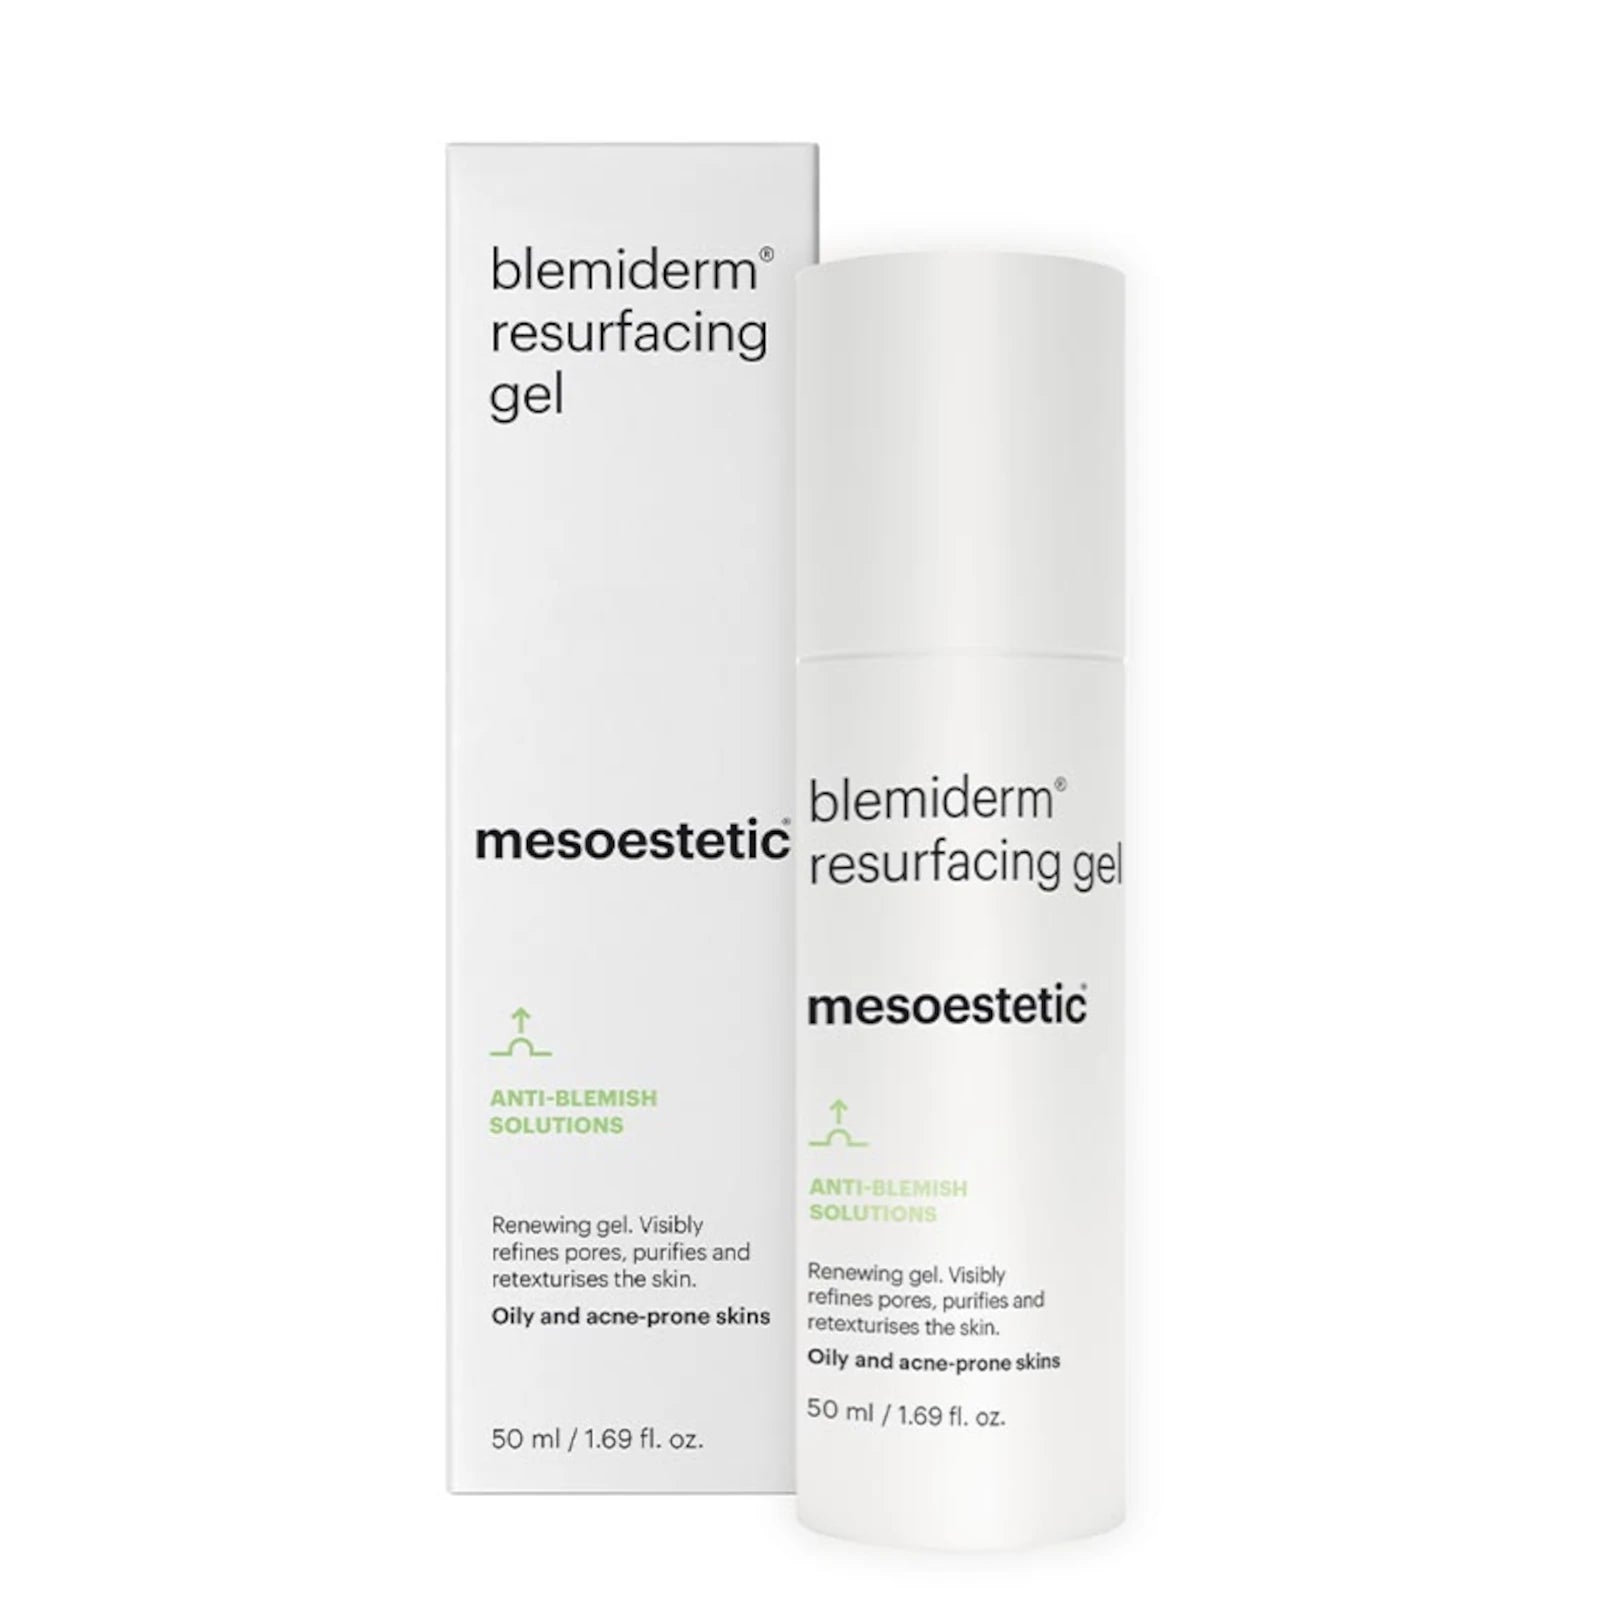 mesoestetic blemiderm resurfacing gel